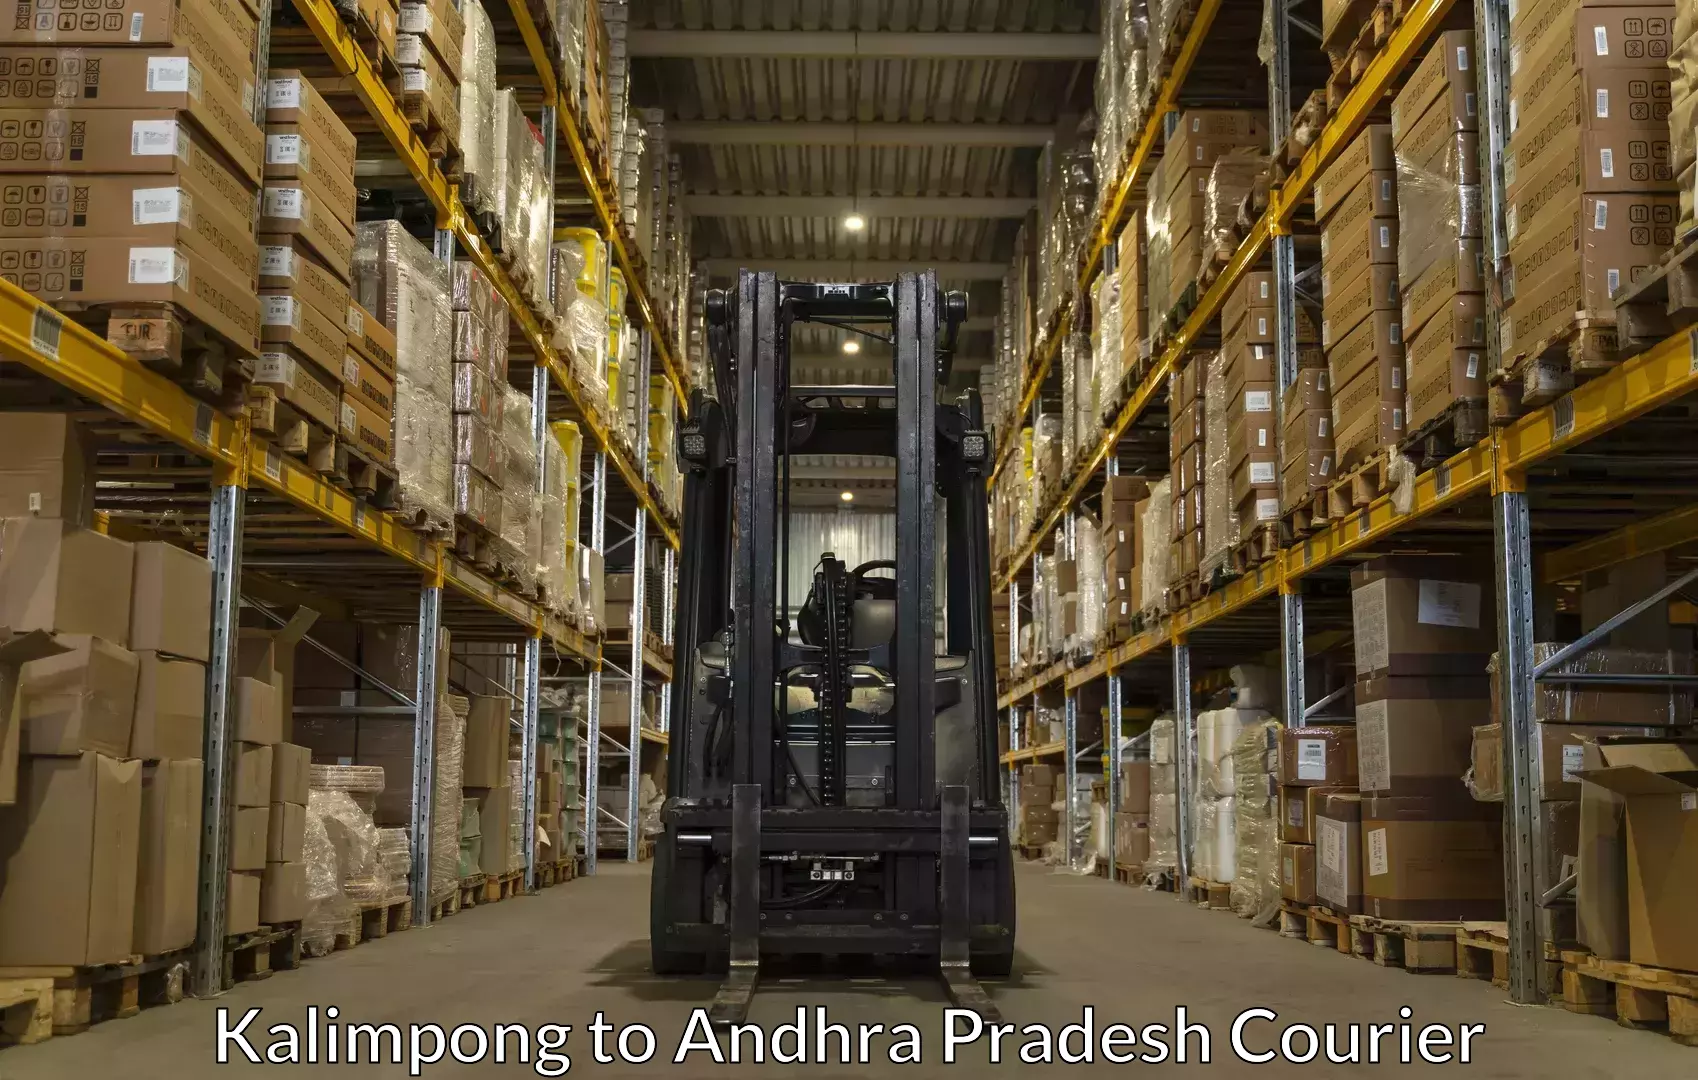 Hassle-free luggage shipping Kalimpong to Puttur Tirupati